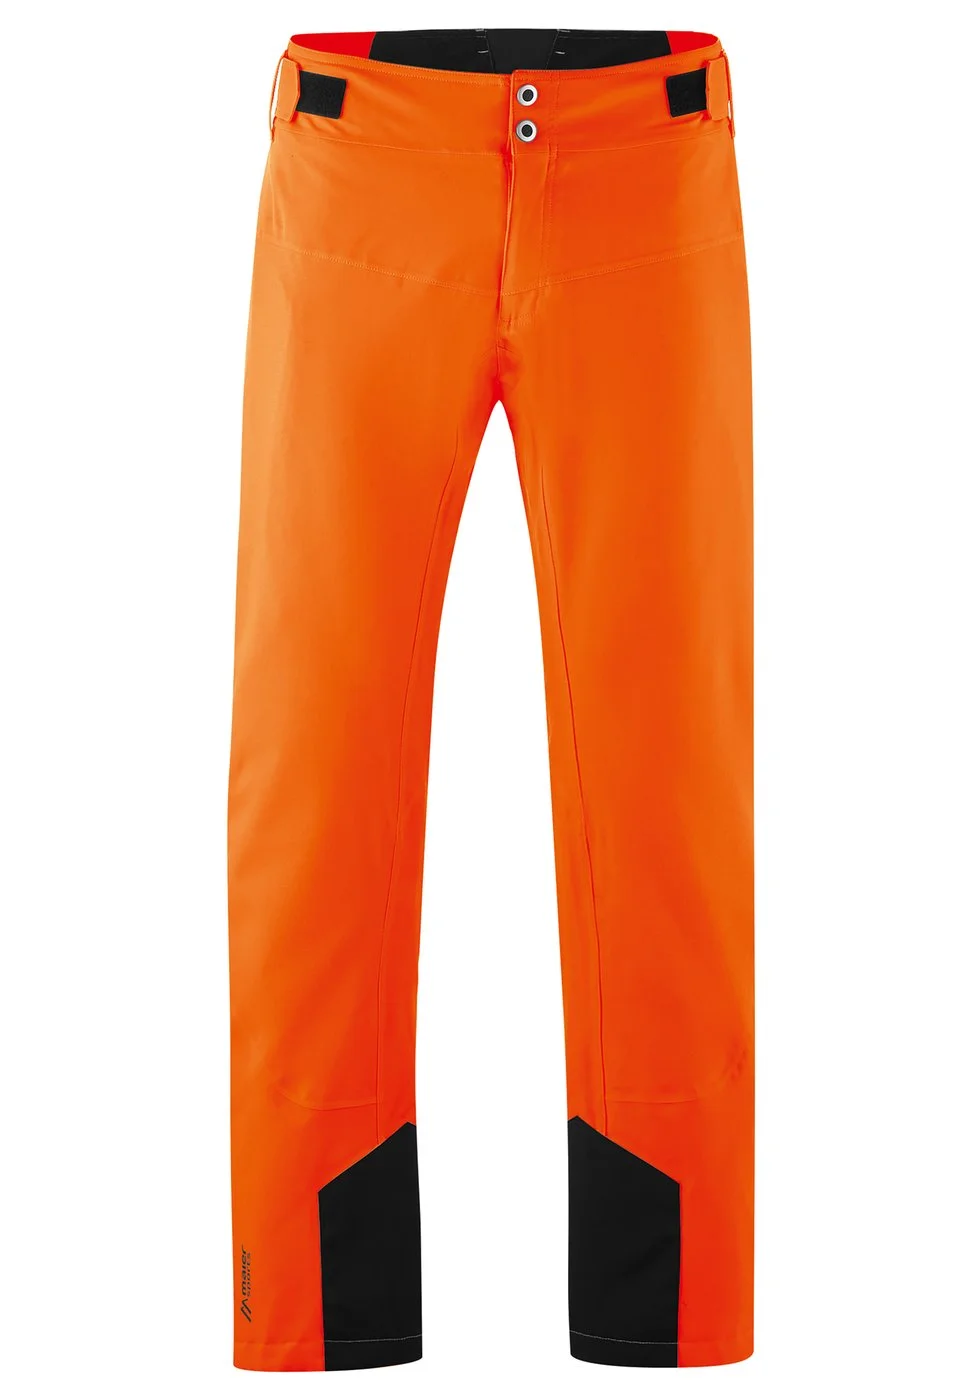 Verenigen Vergissing Een computer gebruiken Maier Sports Grote Maten Neo Pants skibroek heren oranje van ski broeken